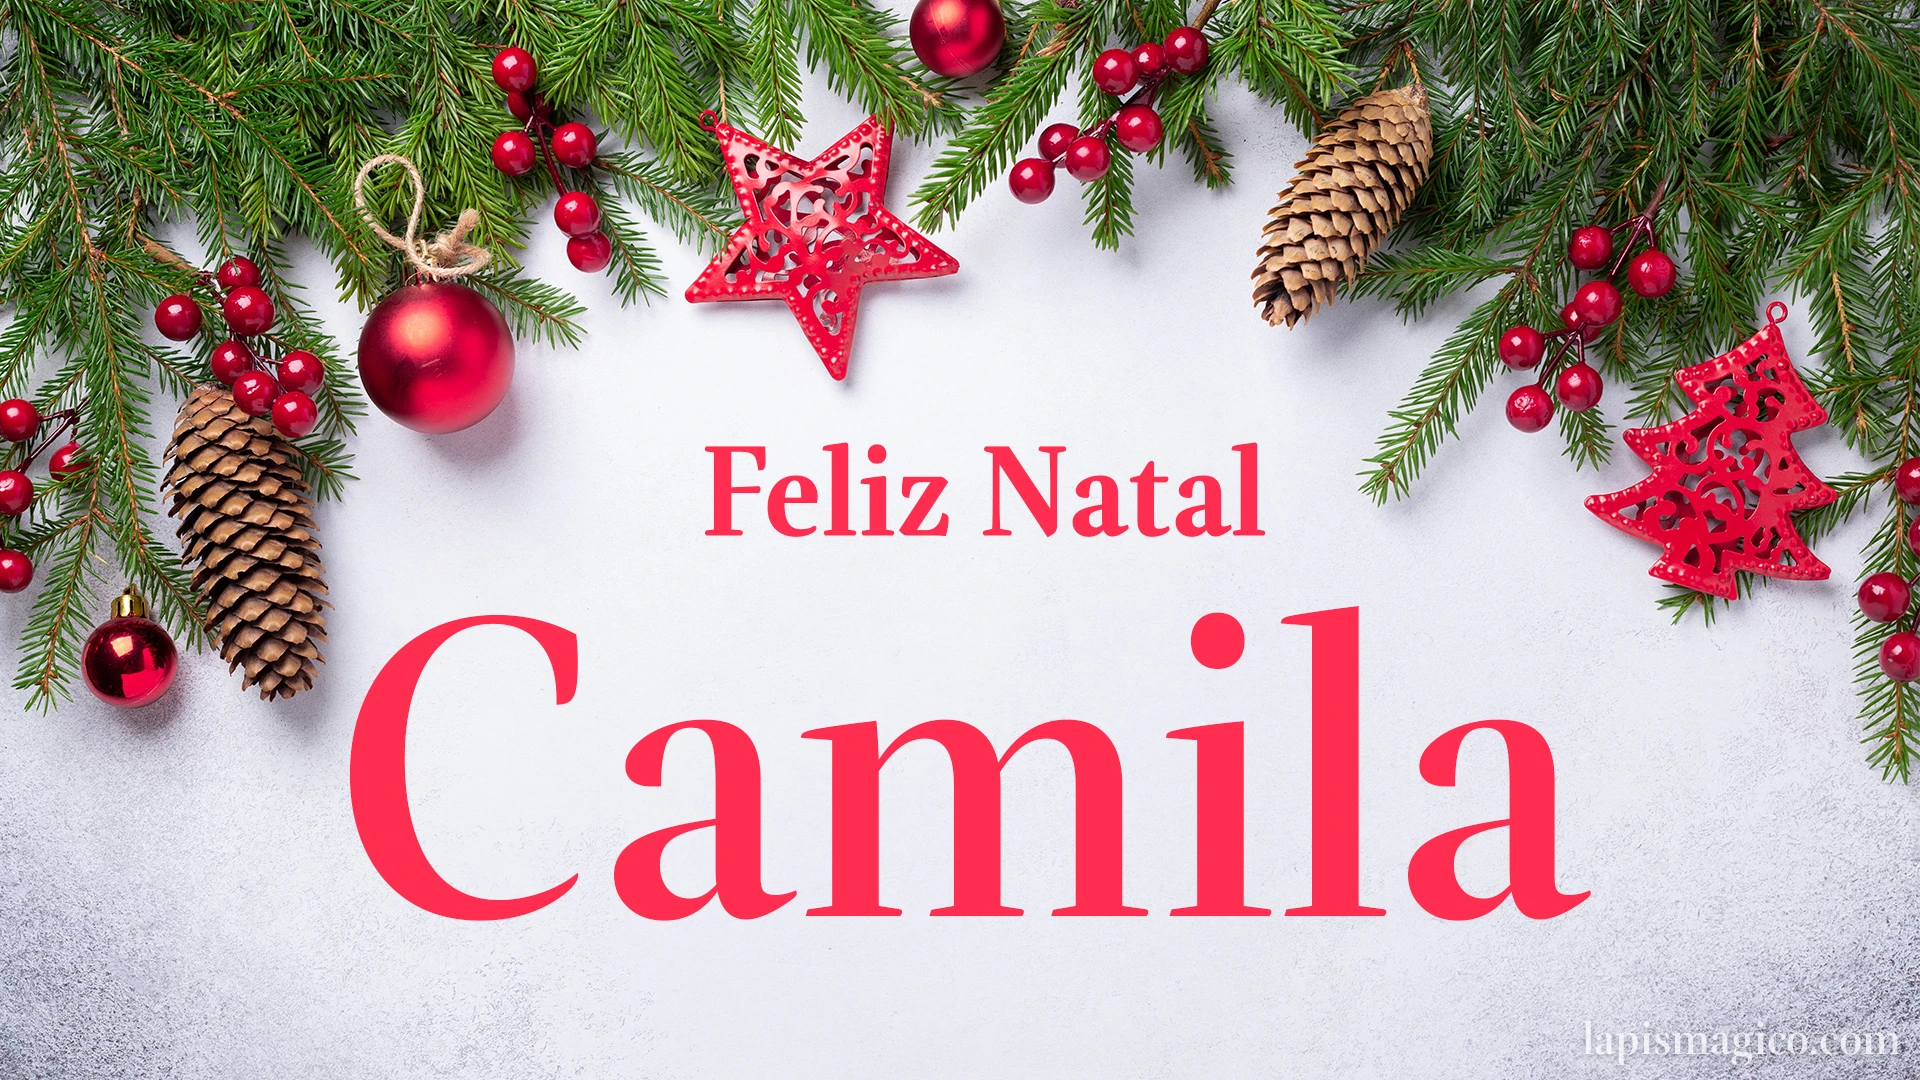 Oh Camila, cinco postais de Feliz Natal Postal com o teu nome